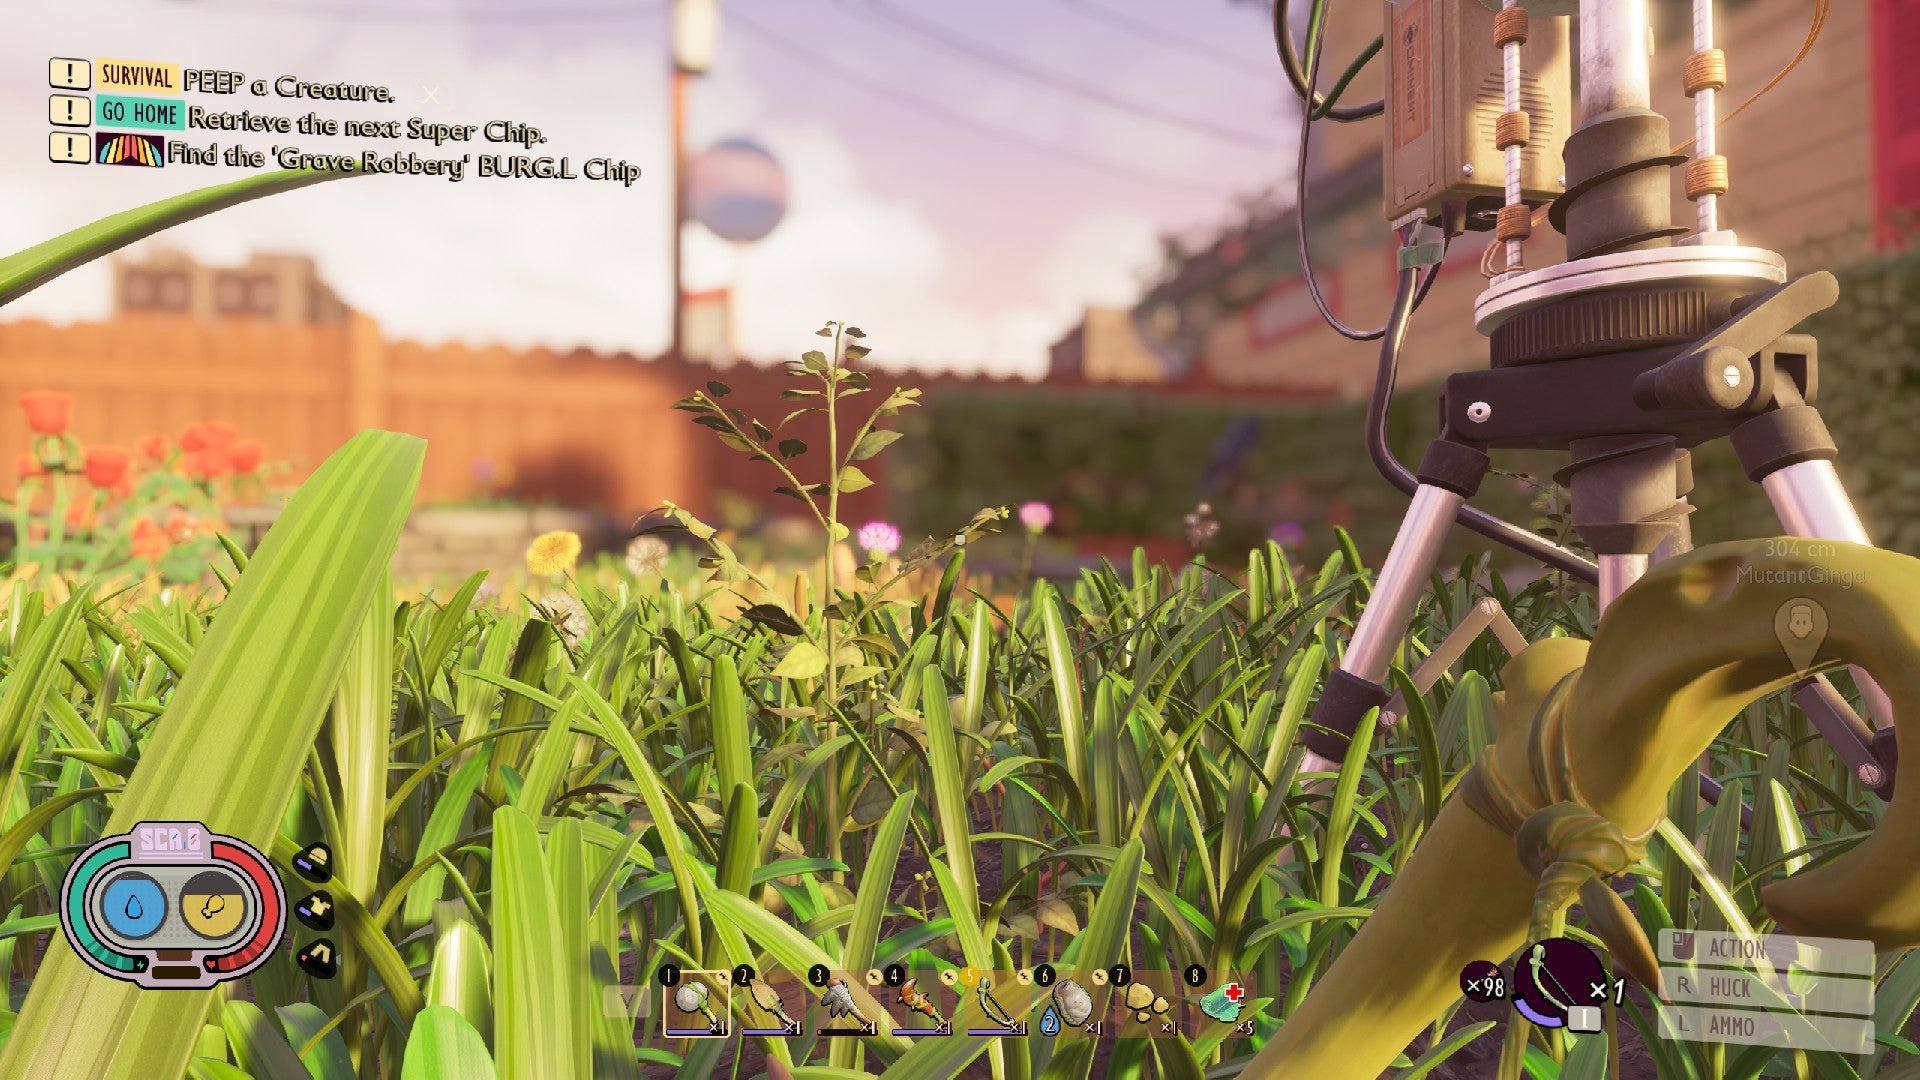 Jugador en tierra mirando por encima de las briznas de hierba, con un gran trípode científico que se cierne a la derecha.